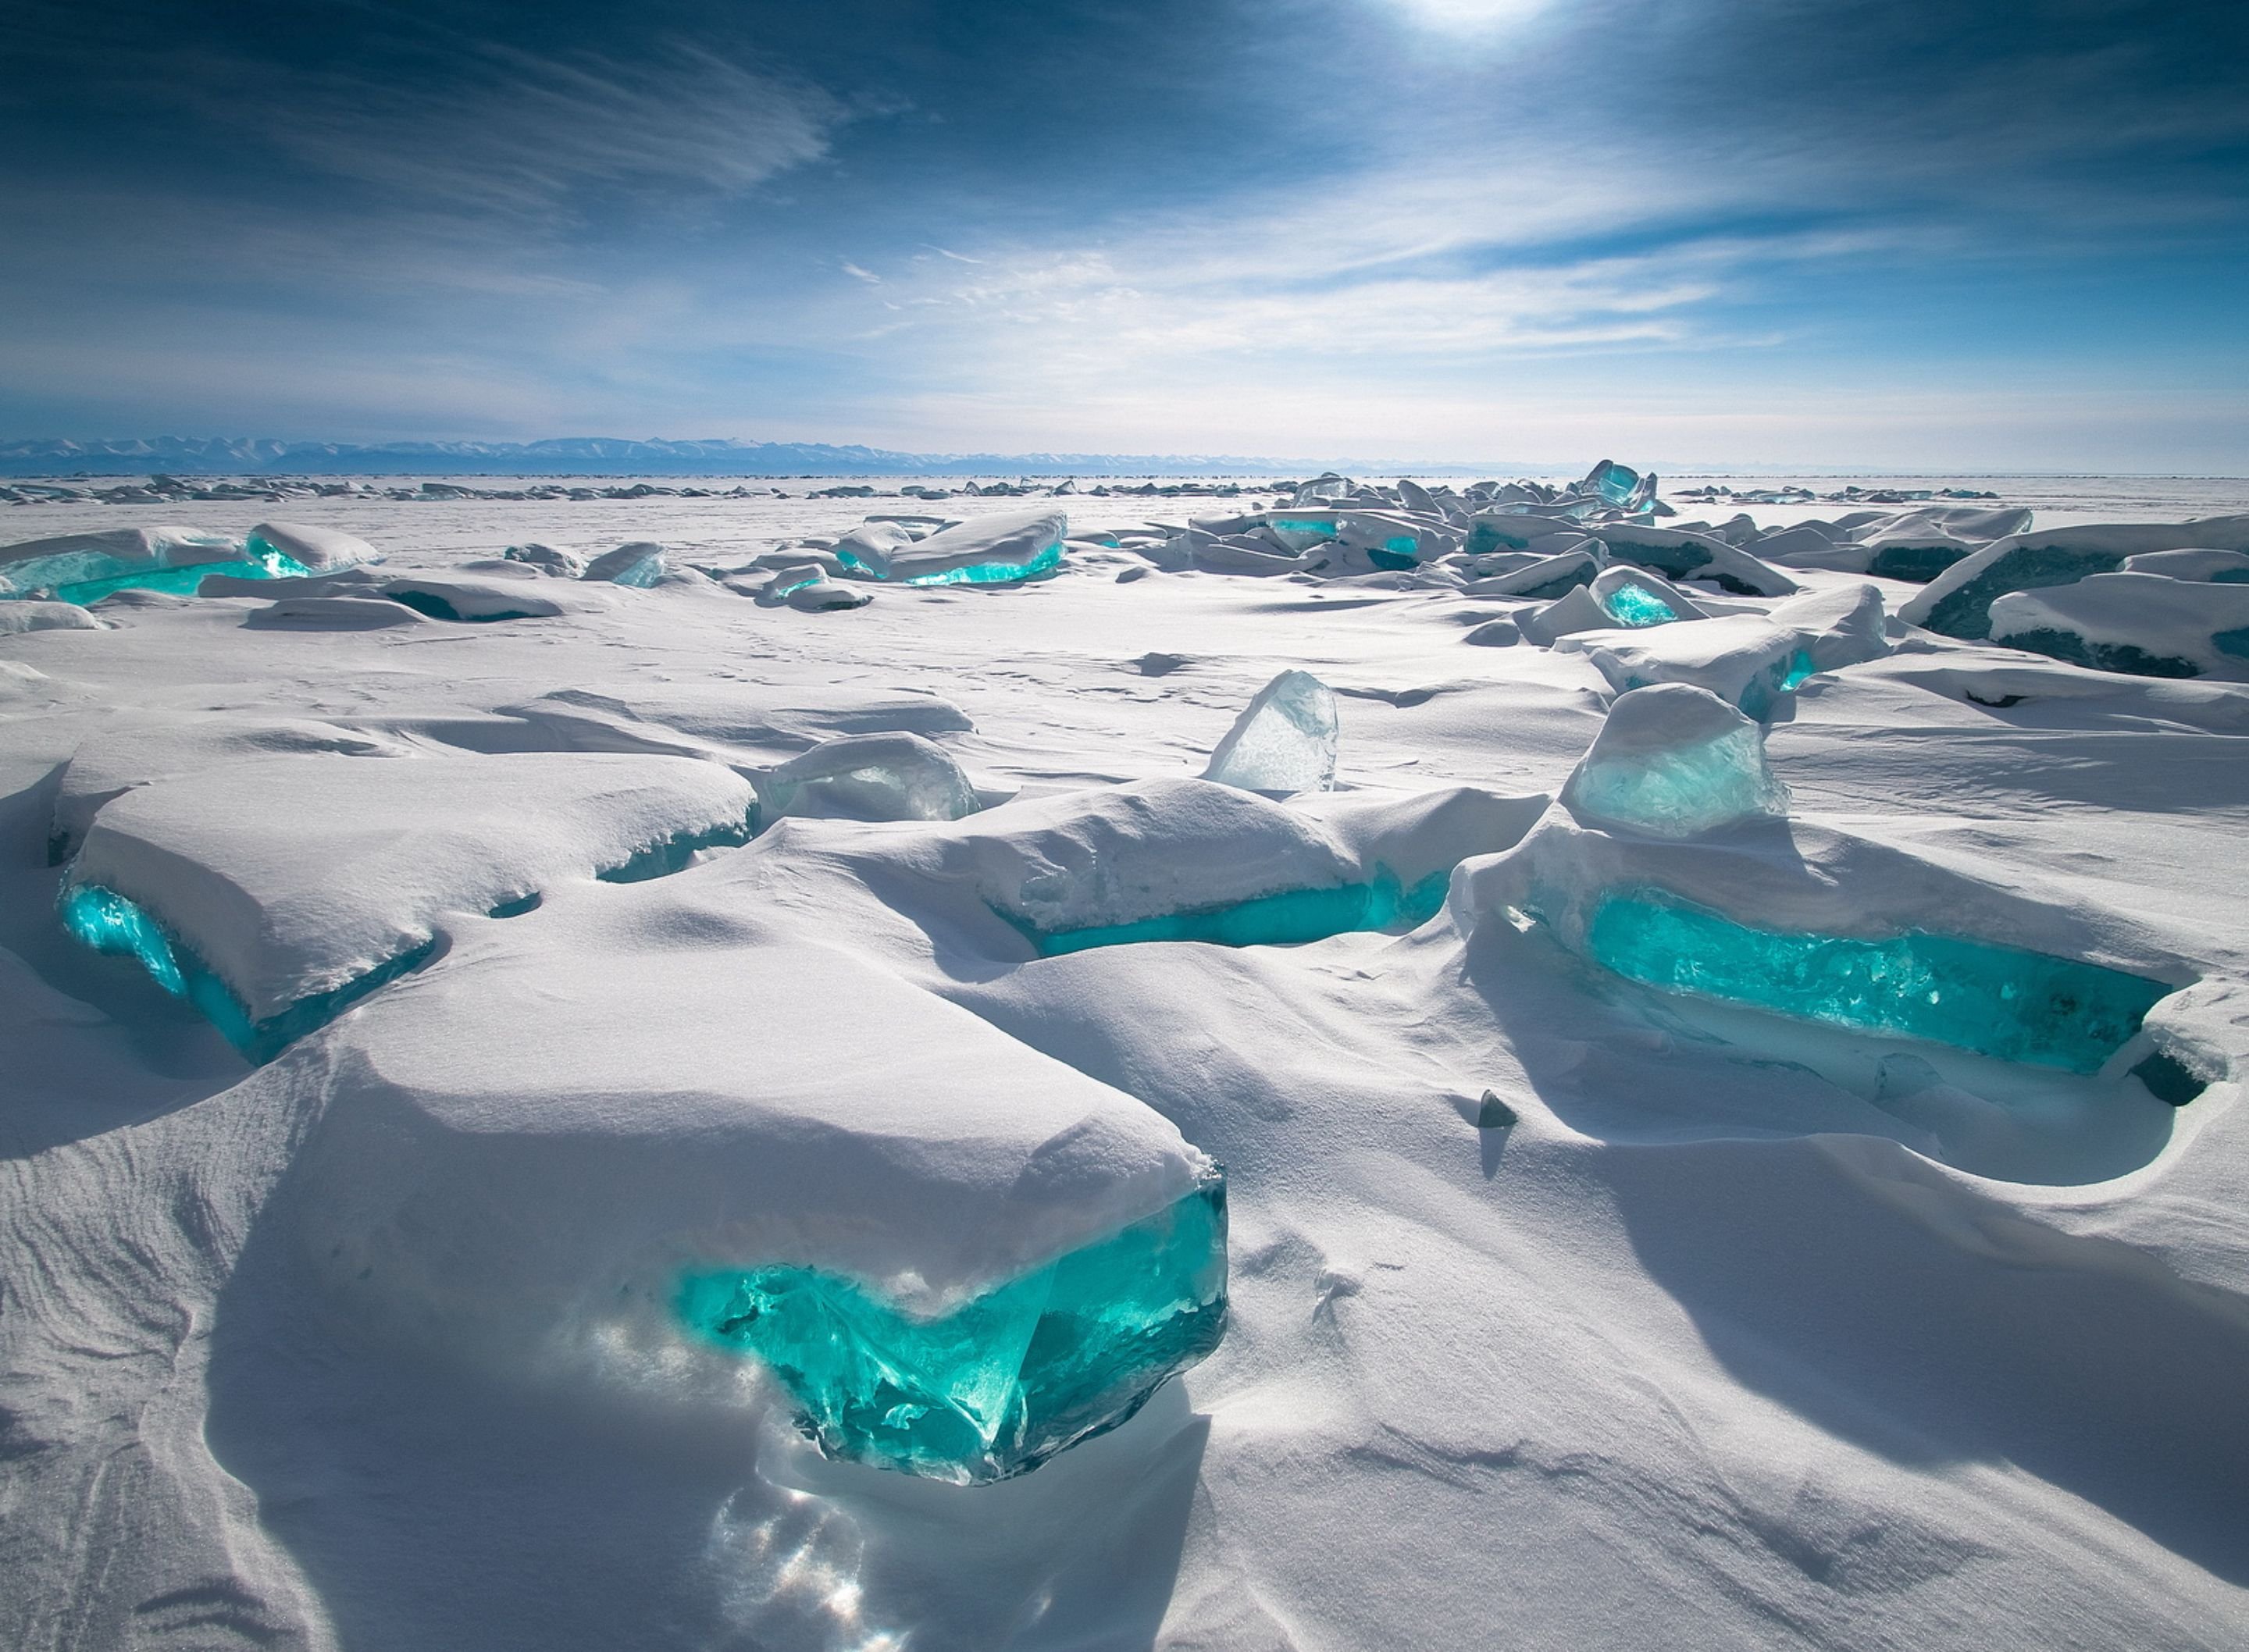 immagini da parati hd,iceberg,ghiaccio,lago glaciale,artico,oceano artico